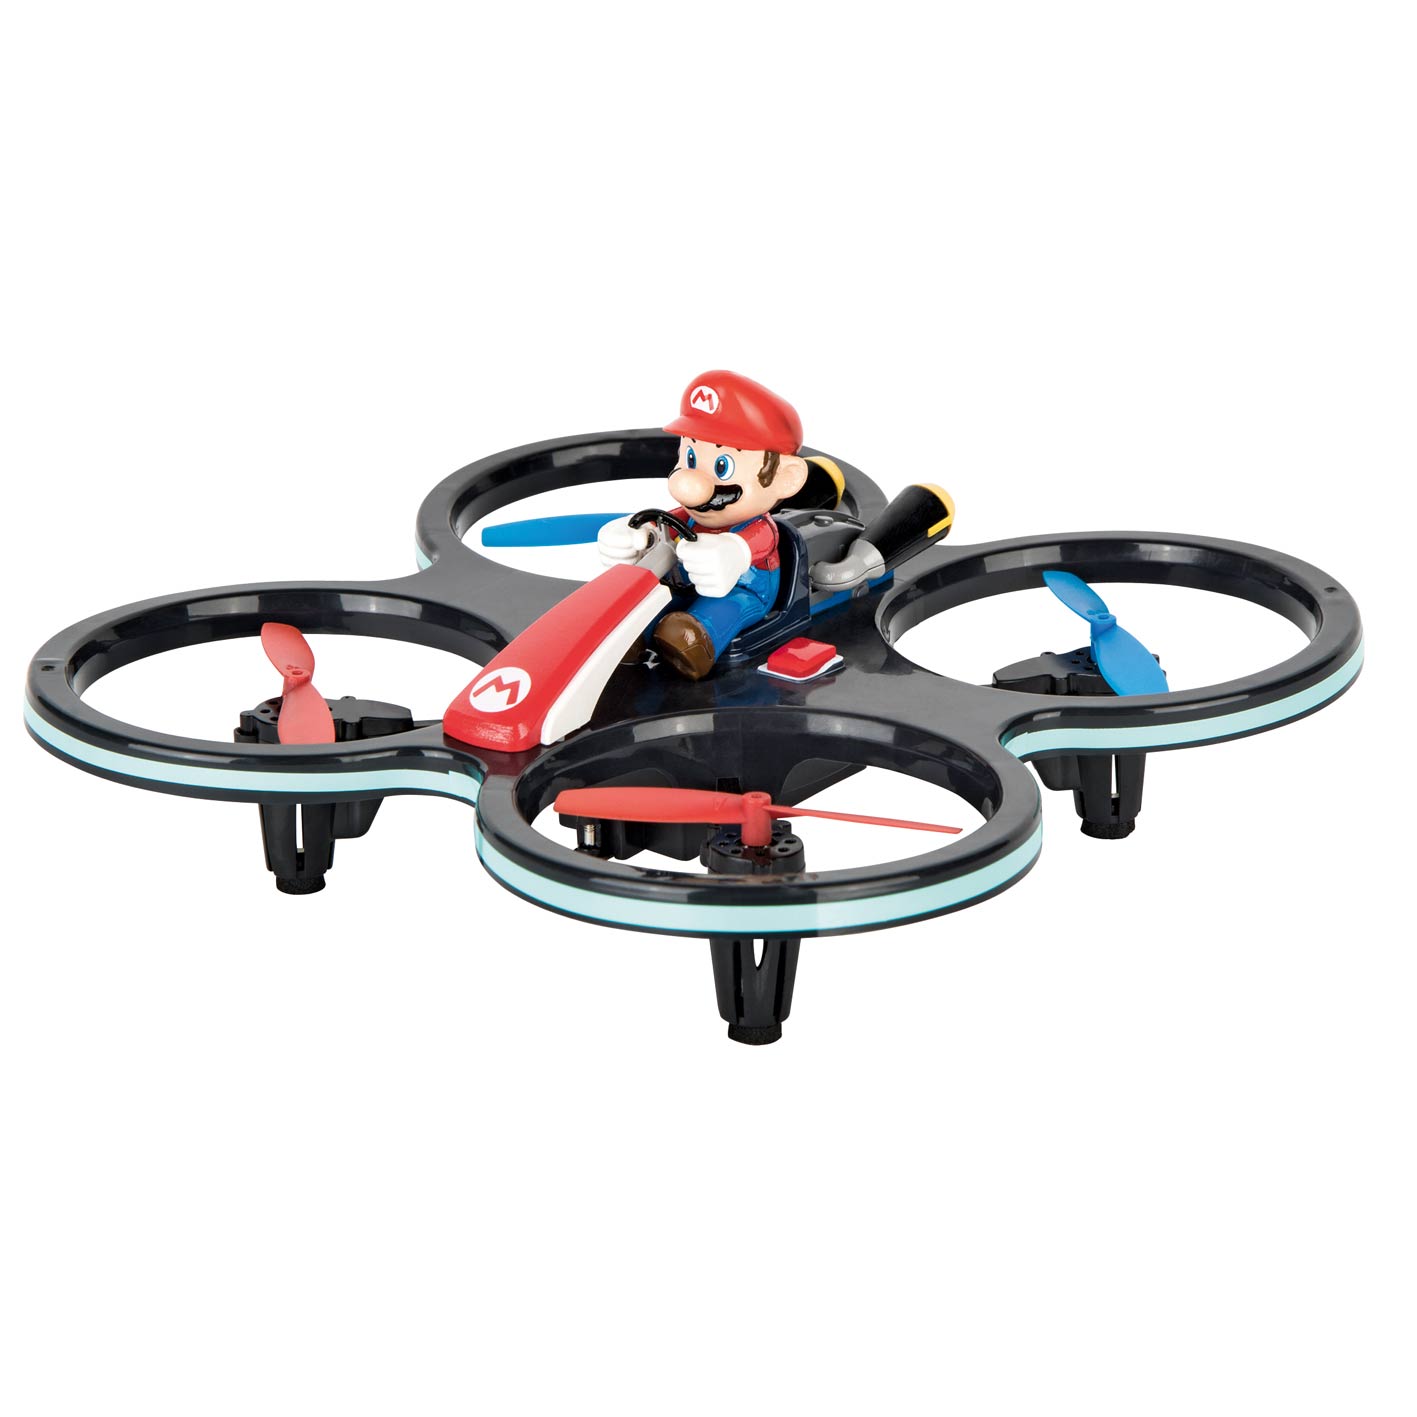 Nintendo AIR Drone - Super Mario 2,4GHZ Mini Mario-Copter